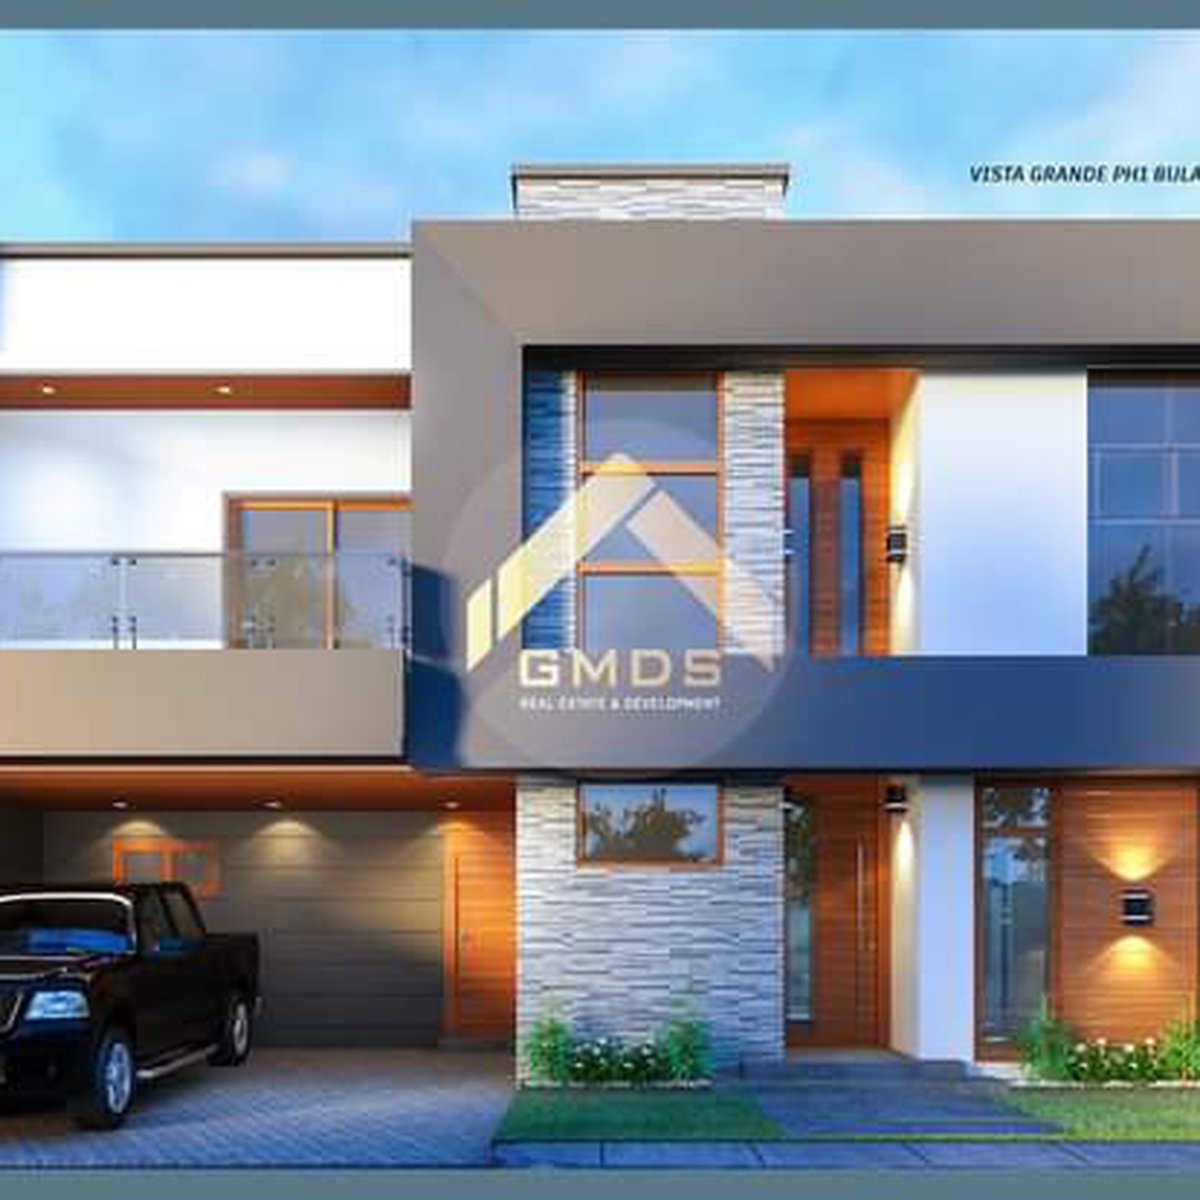 4-bedroom Single Detached House For Sale in Cebu City Cebu